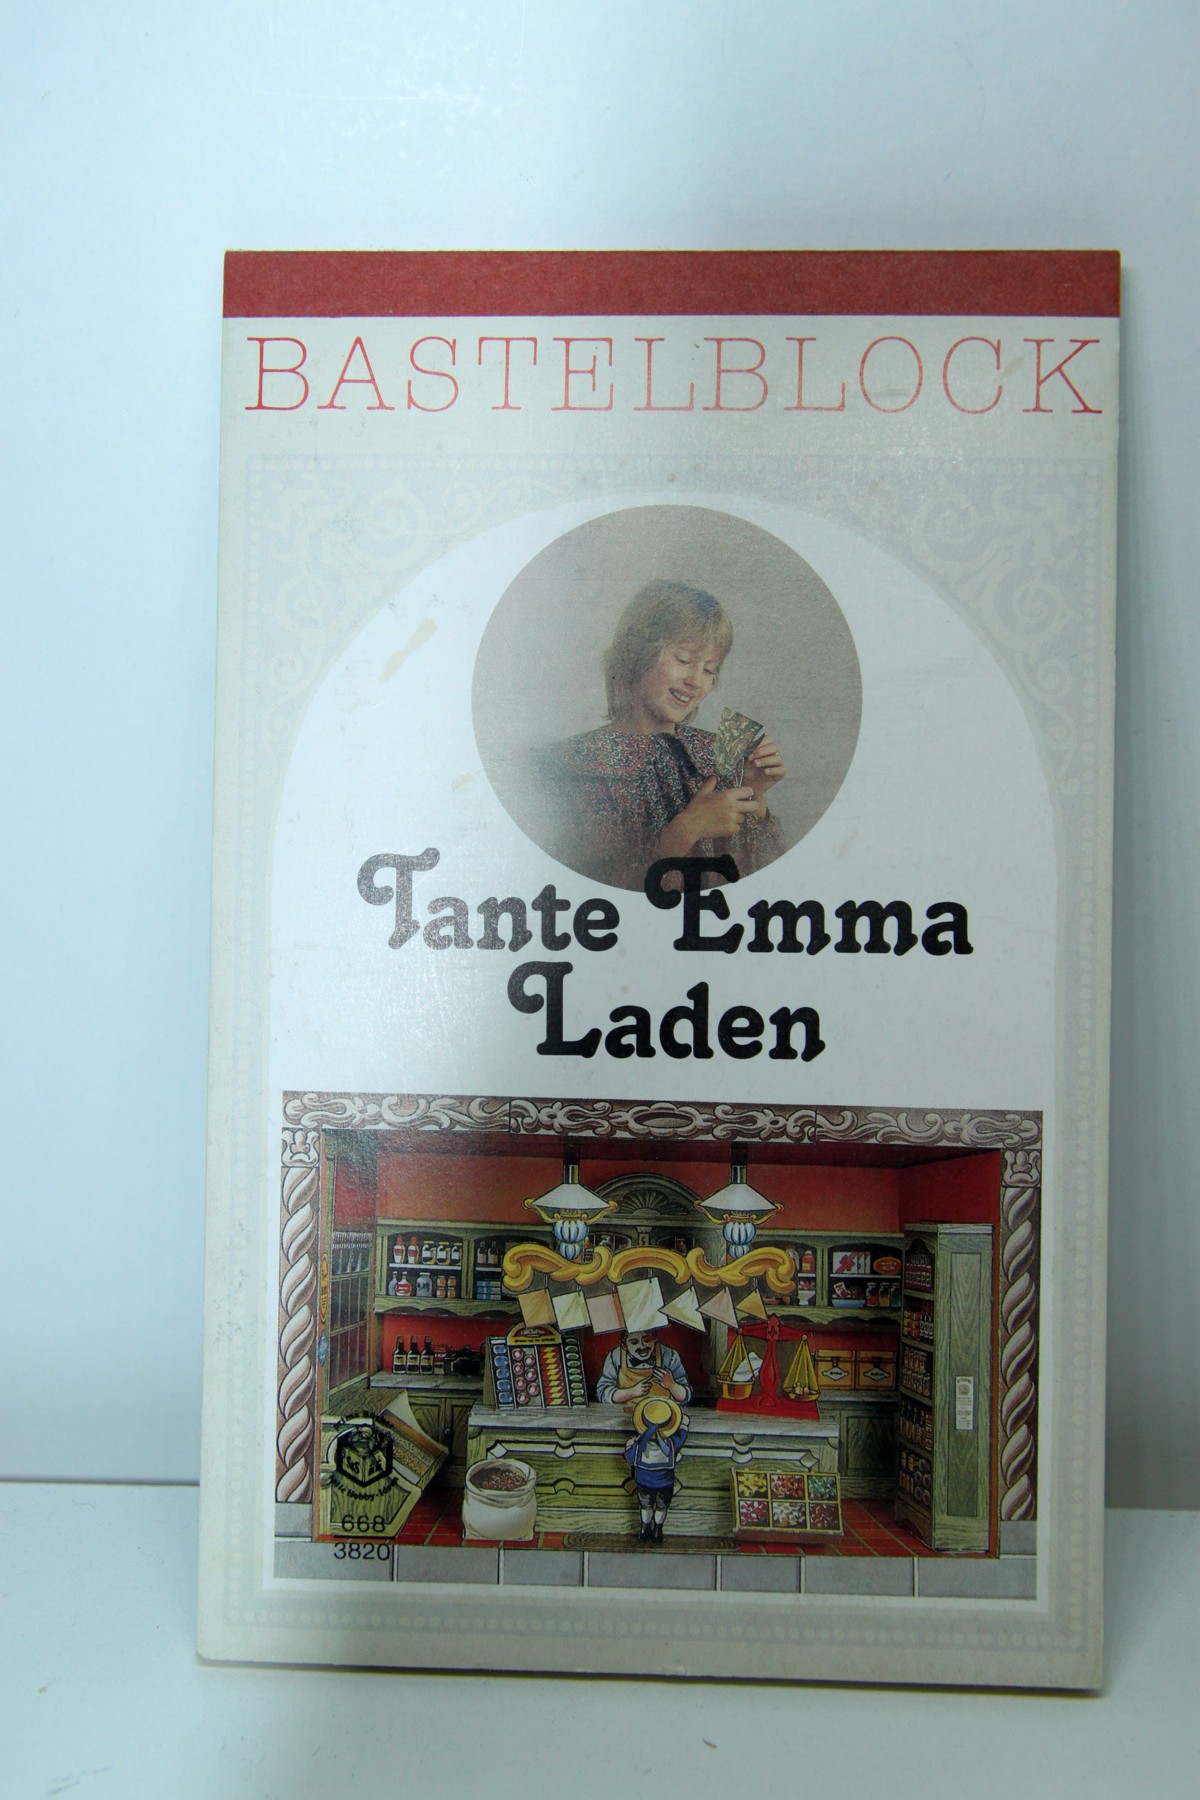 Dieser Bastelblock "Tante Emma Laden" besteht aus 16 Kartonseiten und einer ausführlichen Bauanleitung